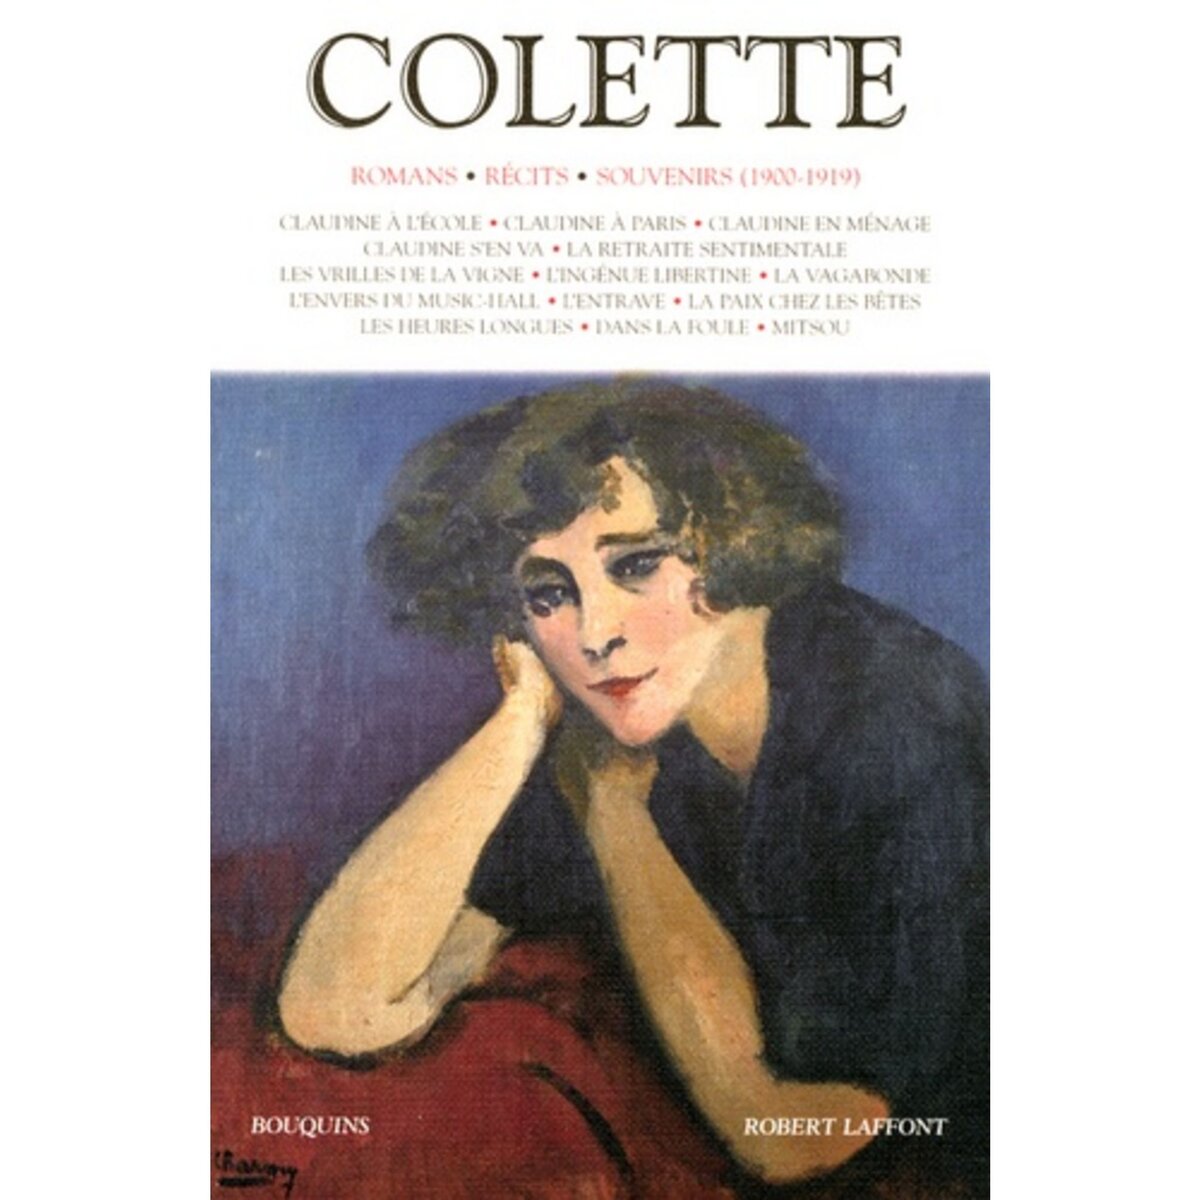  COLETTE. VOLUME 1, ROMANS, RECITS, SOUVENIRS (1900-1919), Colette